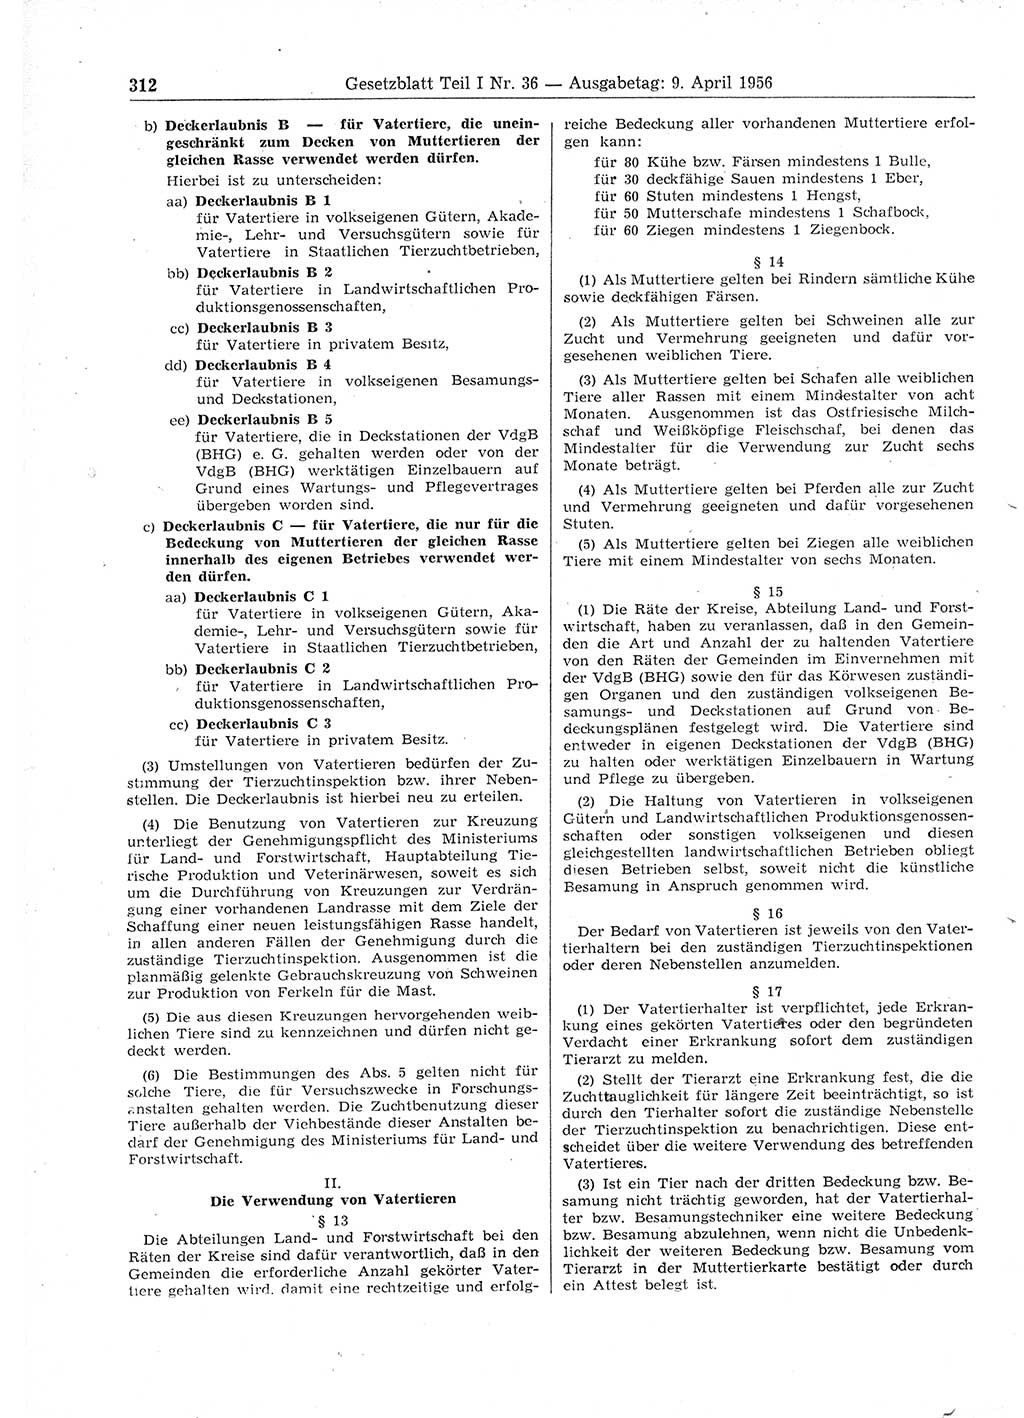 Gesetzblatt (GBl.) der Deutschen Demokratischen Republik (DDR) Teil Ⅰ 1956, Seite 312 (GBl. DDR Ⅰ 1956, S. 312)